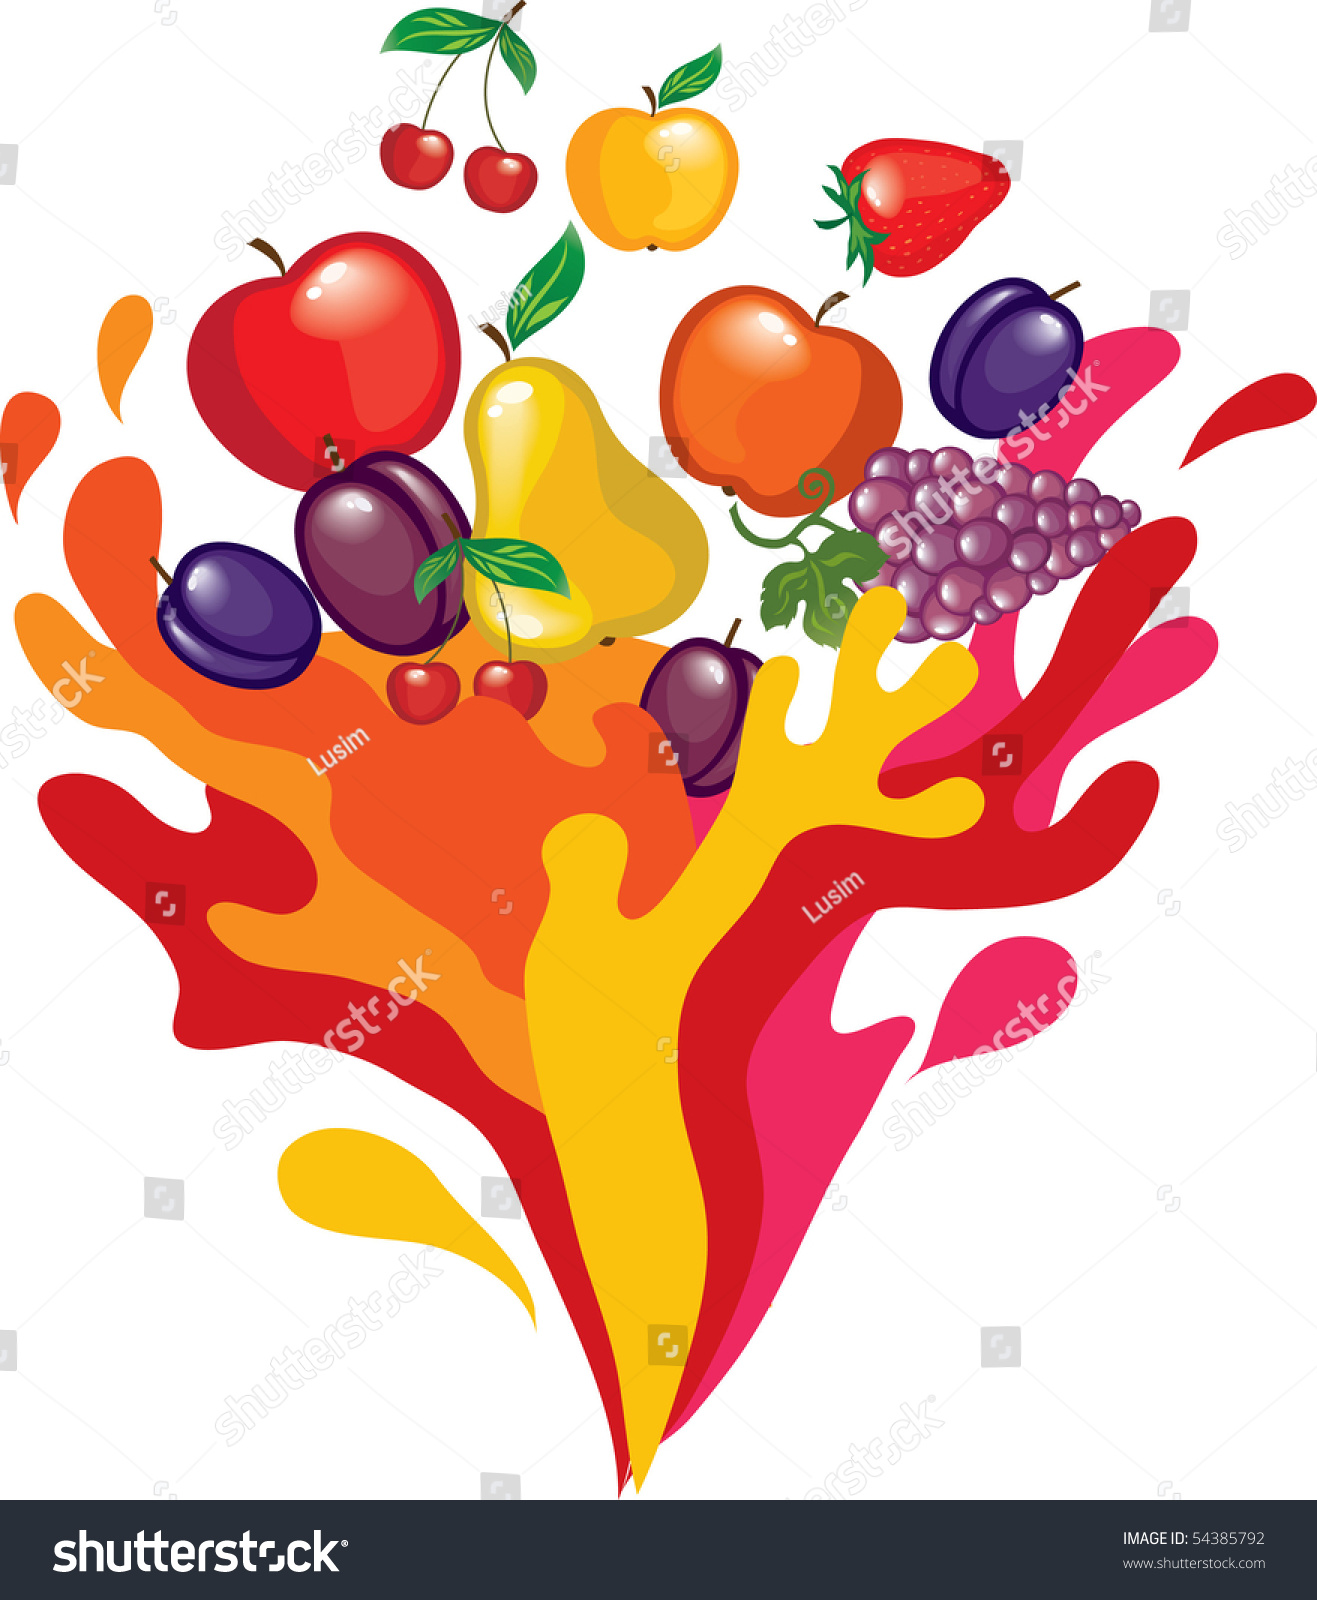 Fruit Splash Stock Vector 54385792 - Shutterstock